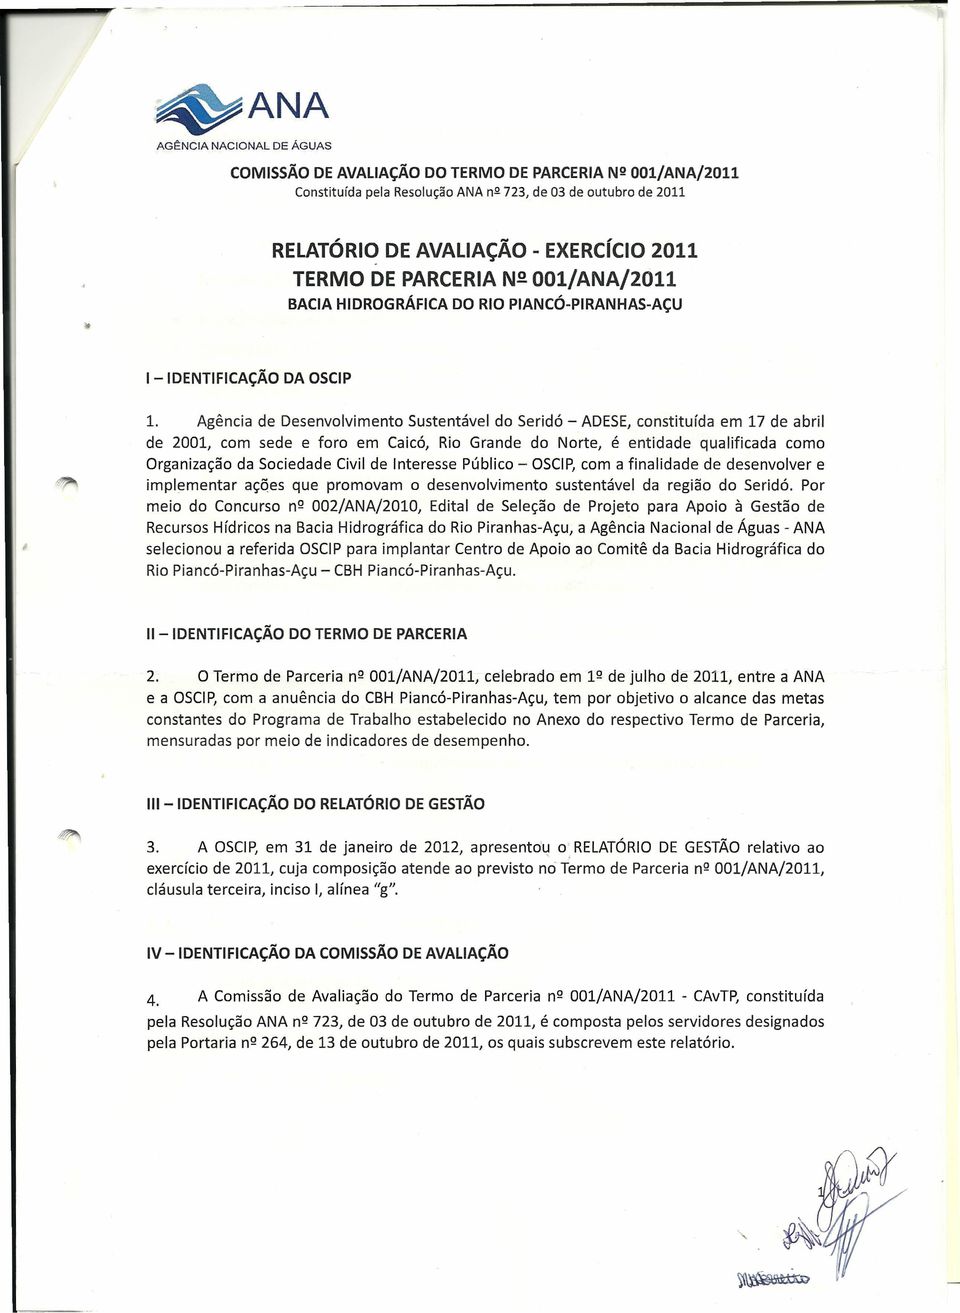 Agência de Desenvolvimento Sustentável do Seridó - ADESE constituída em 17 de abril de 2001 com sede e foro em Caicó Rio Grande do Norte é entidade qualificada como Organização da Sociedade Civil de